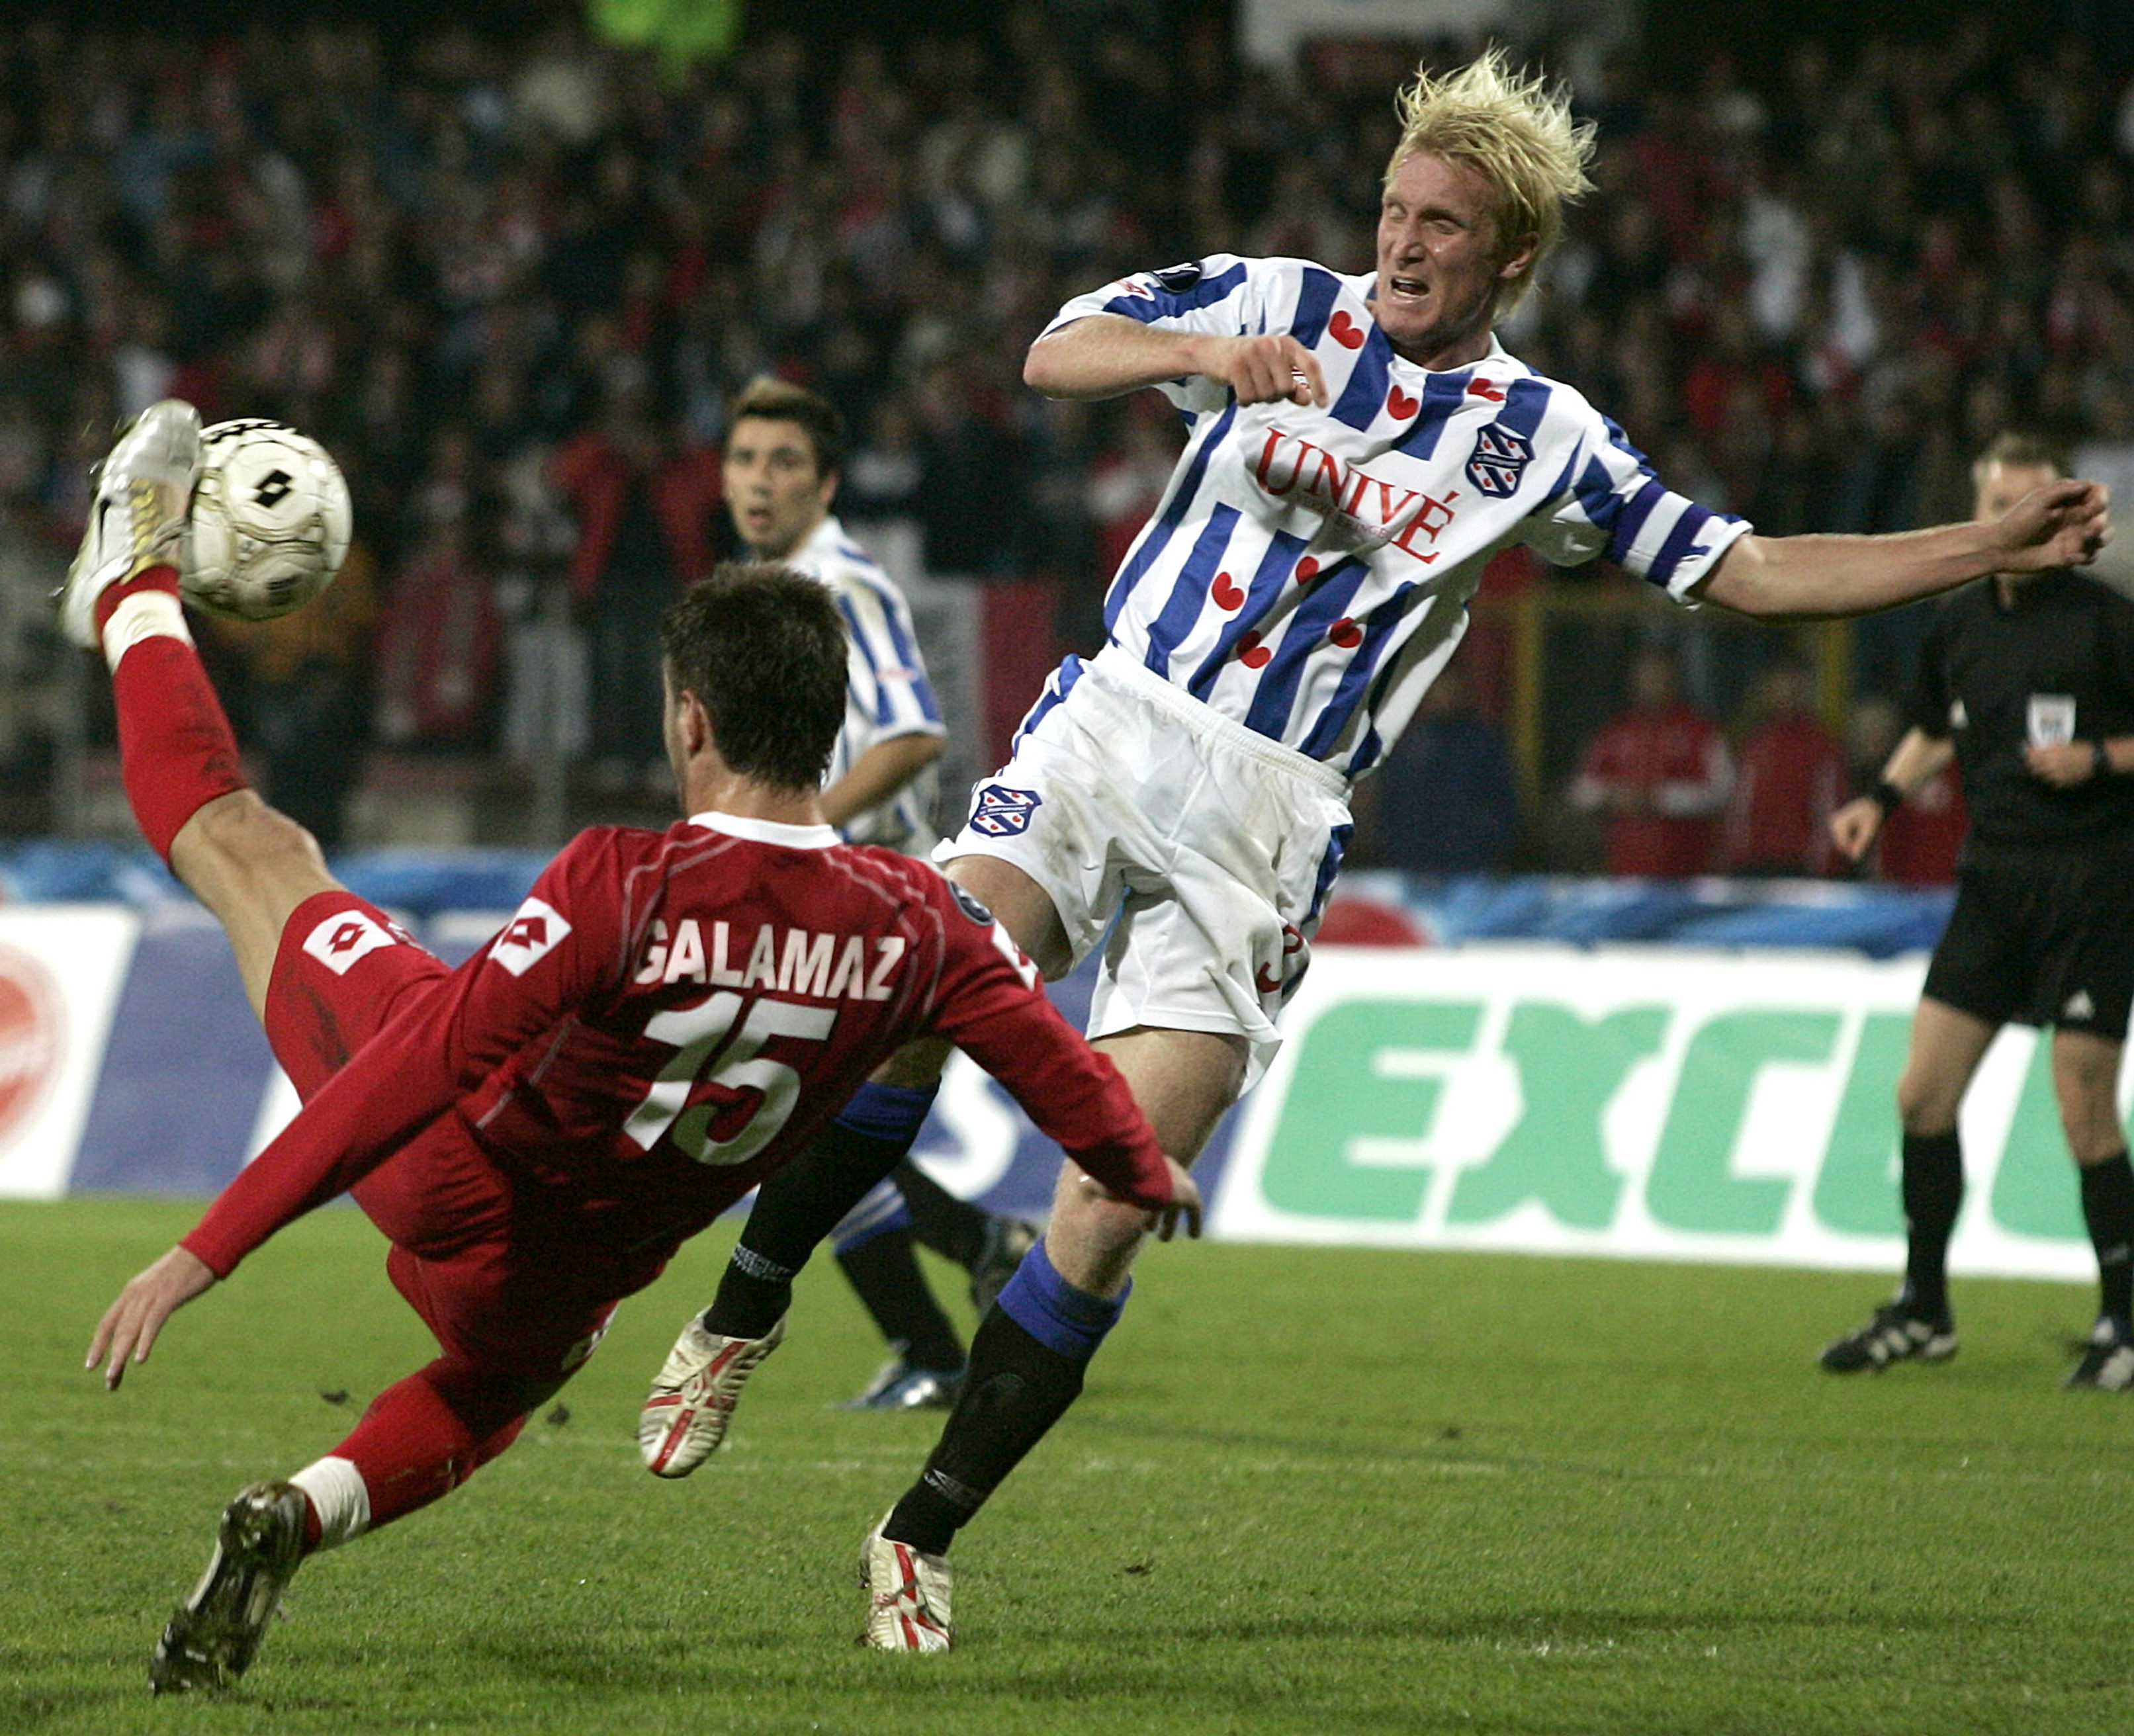 Sedan bar det av till holländska Heerenveen. Hansson hann också representera Rennes och Monaco i Frankrike.